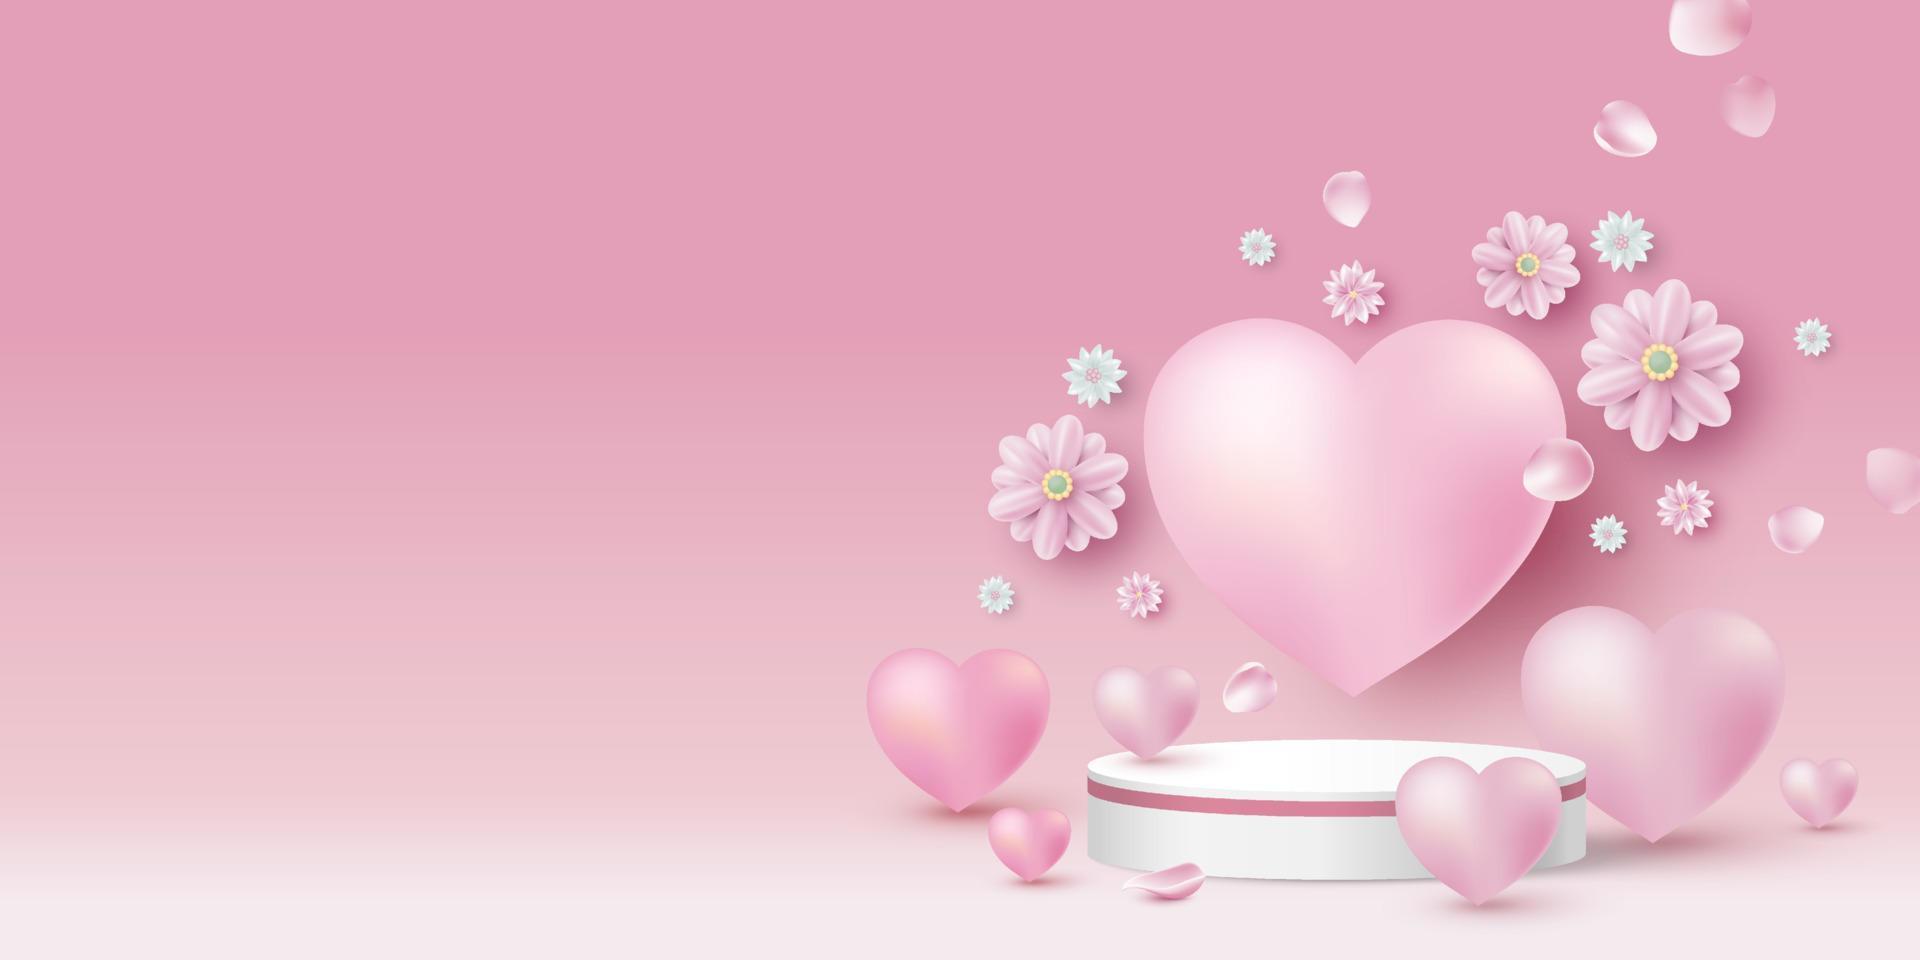 podio prodotto bianco bianco e cuori con fiori su sfondo rosa per l'illustrazione vettoriale 3d di san valentino